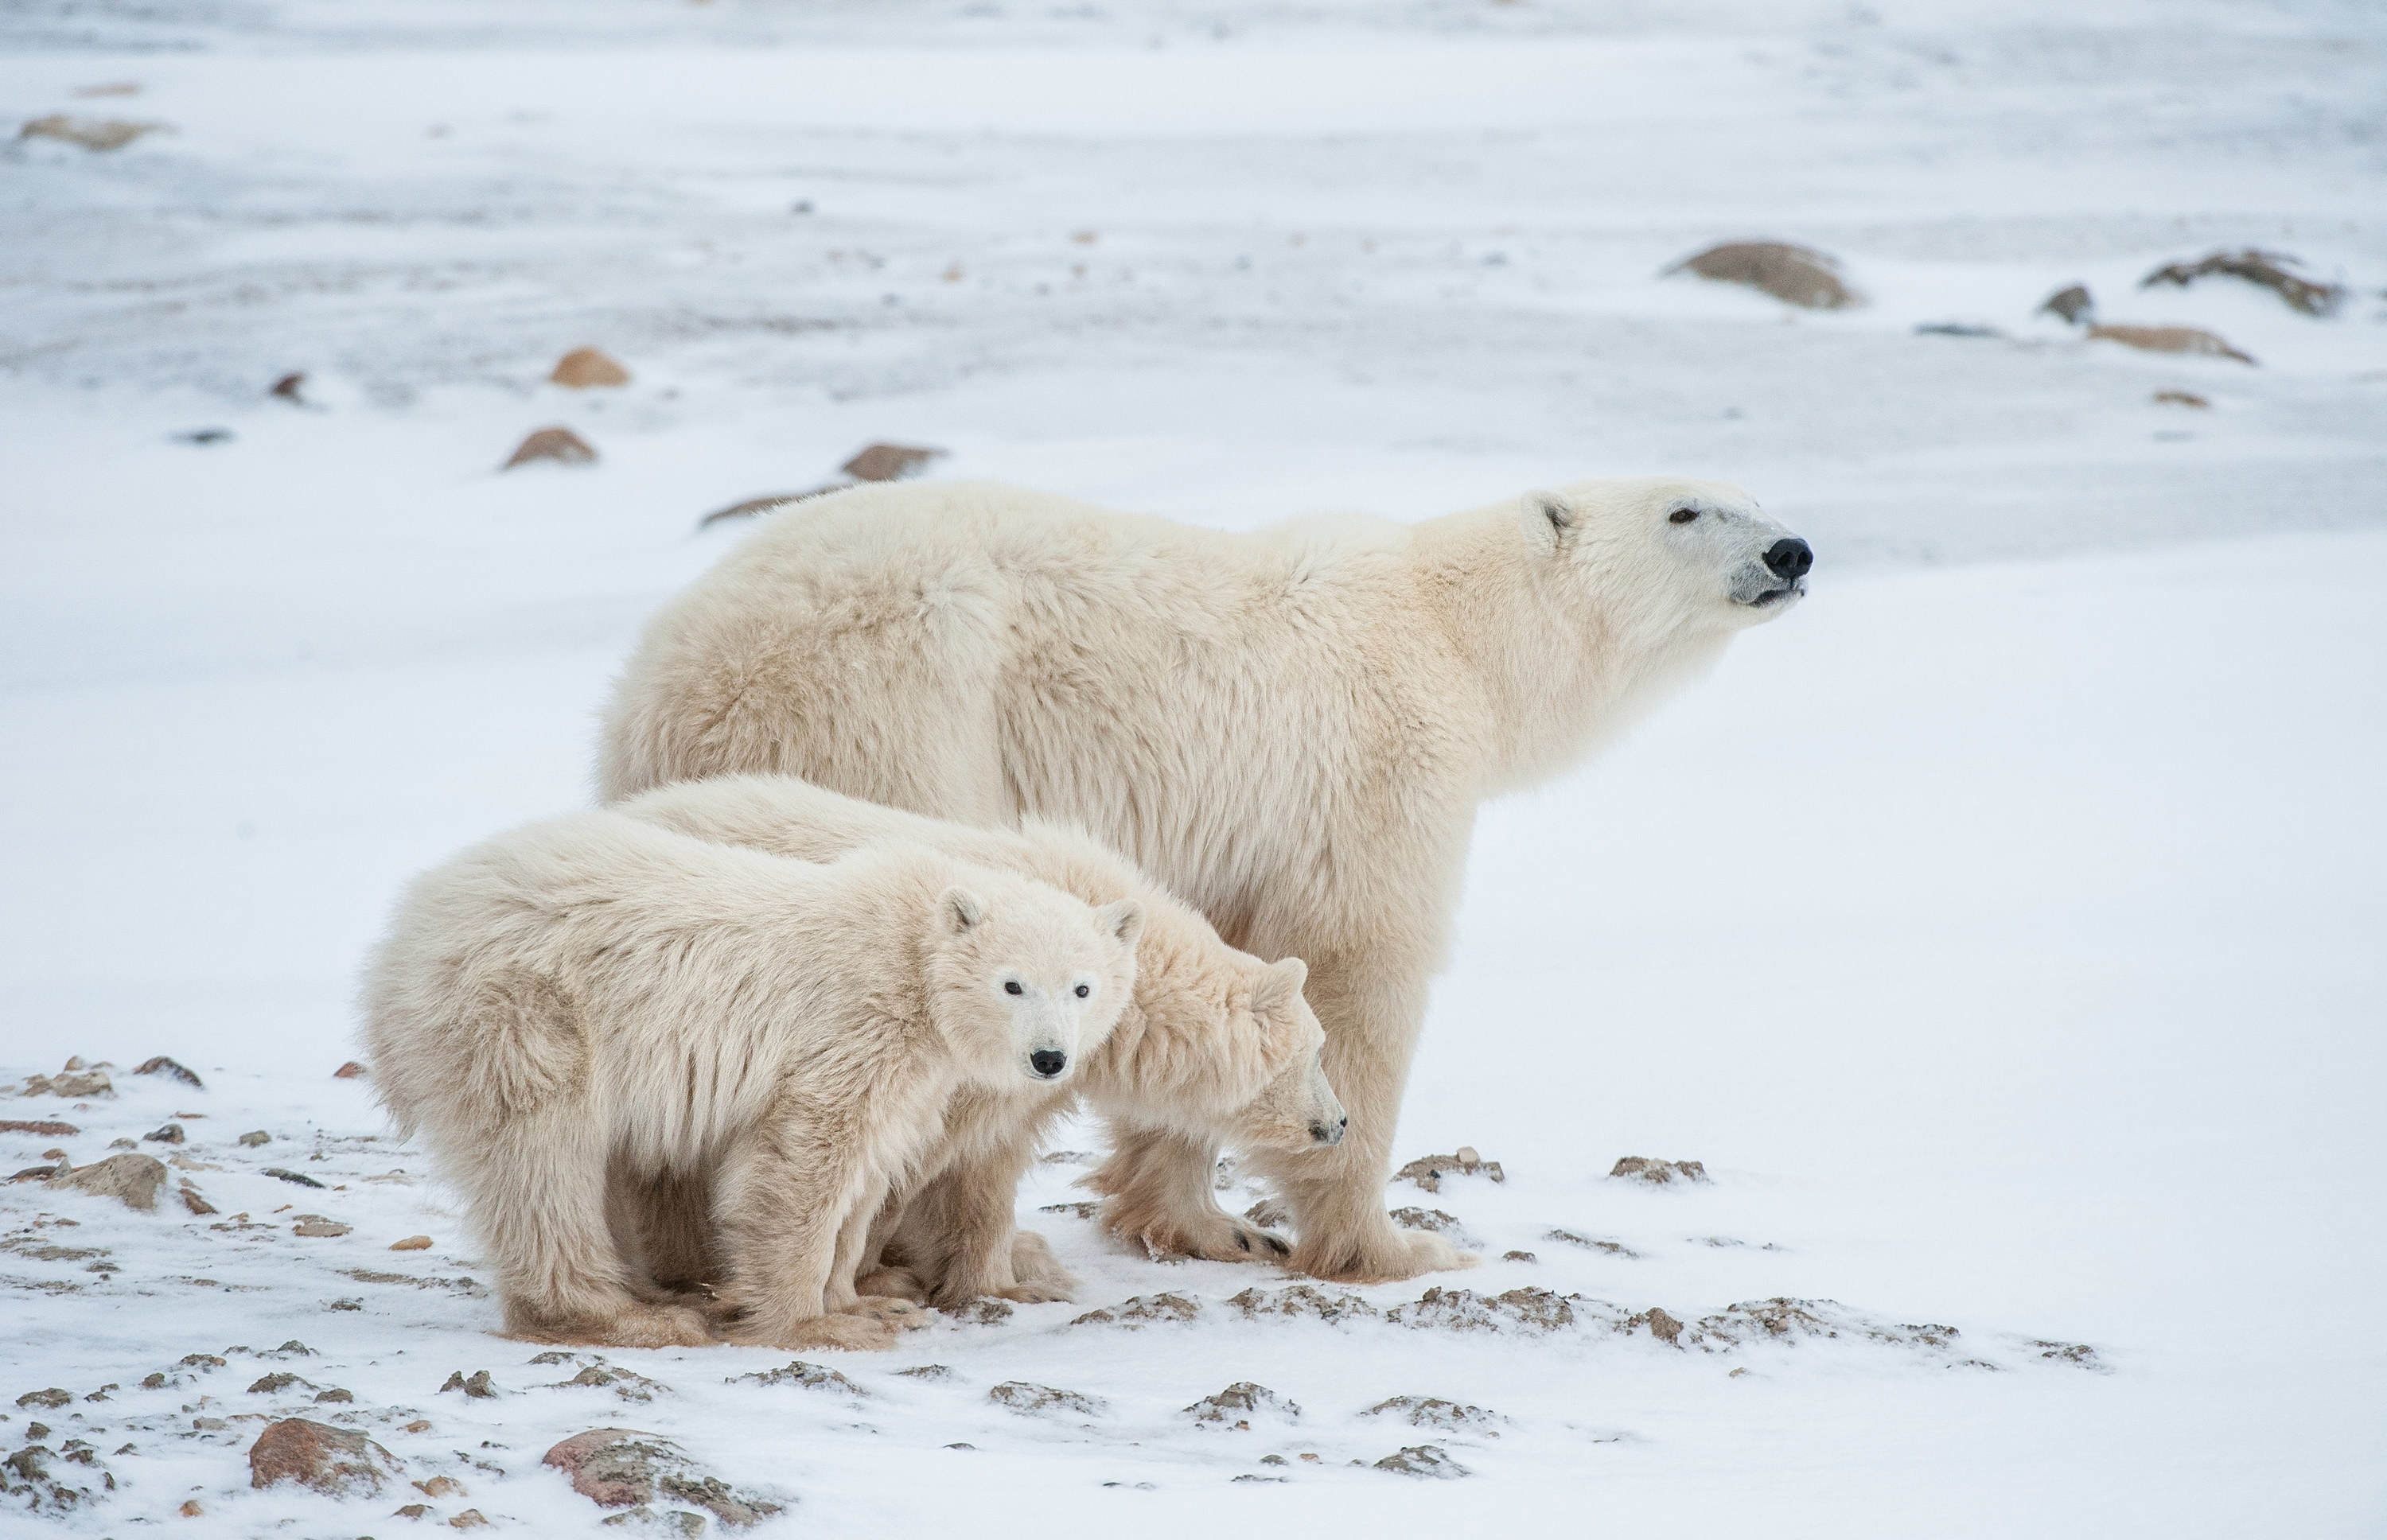 Polar she-bear with cubs. A Polar she-bear with two small bear cubs on the snow